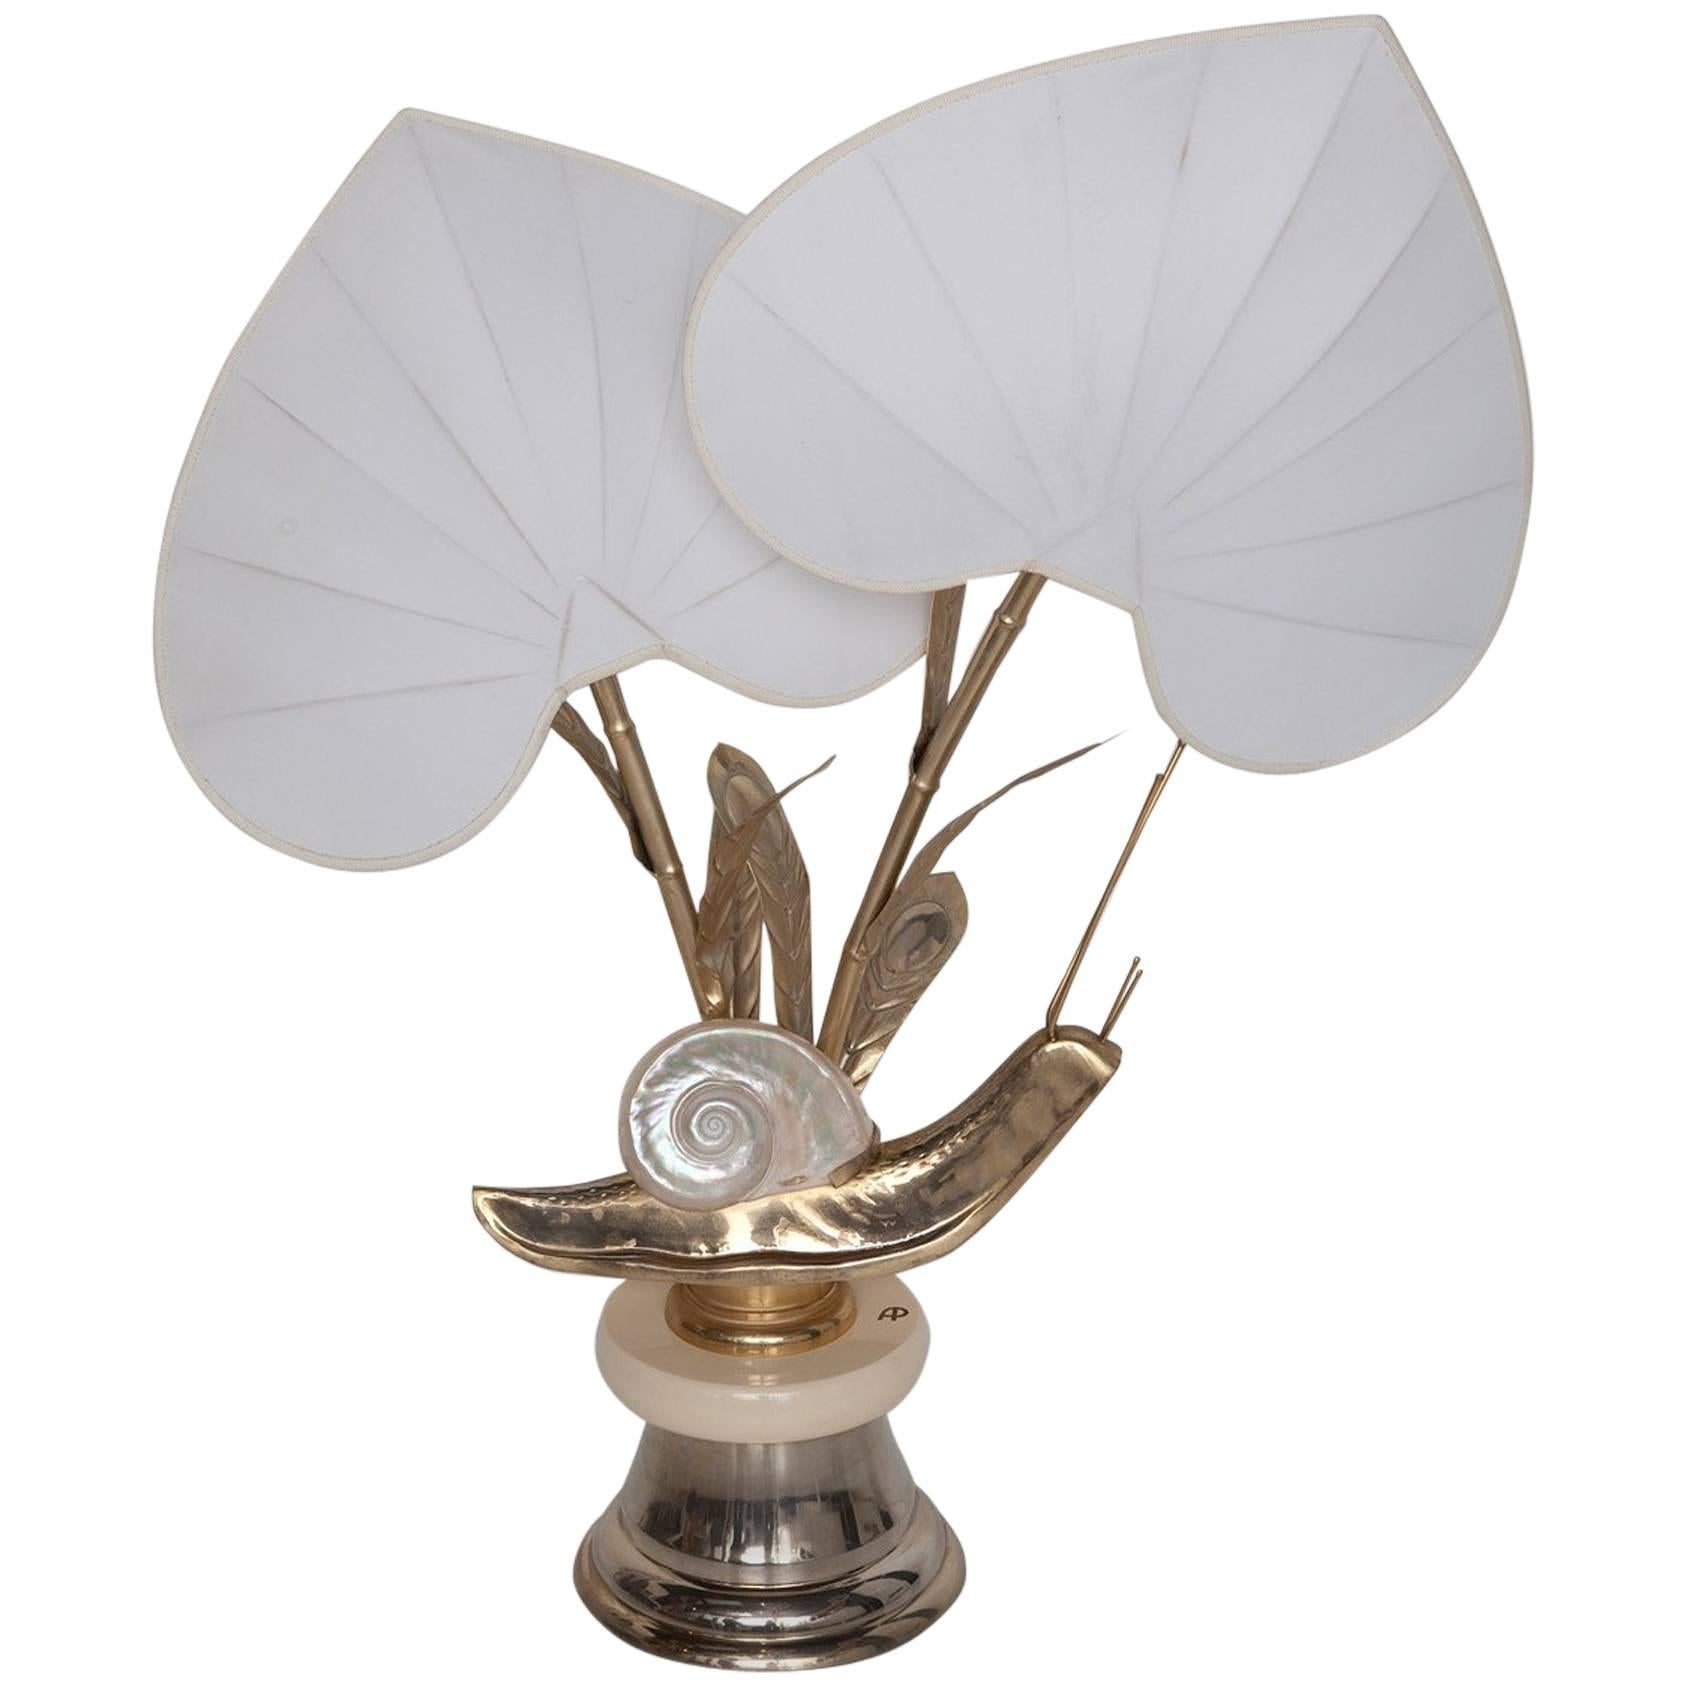 Monumental Brass Snail Table Lamp by Antonio Pavia